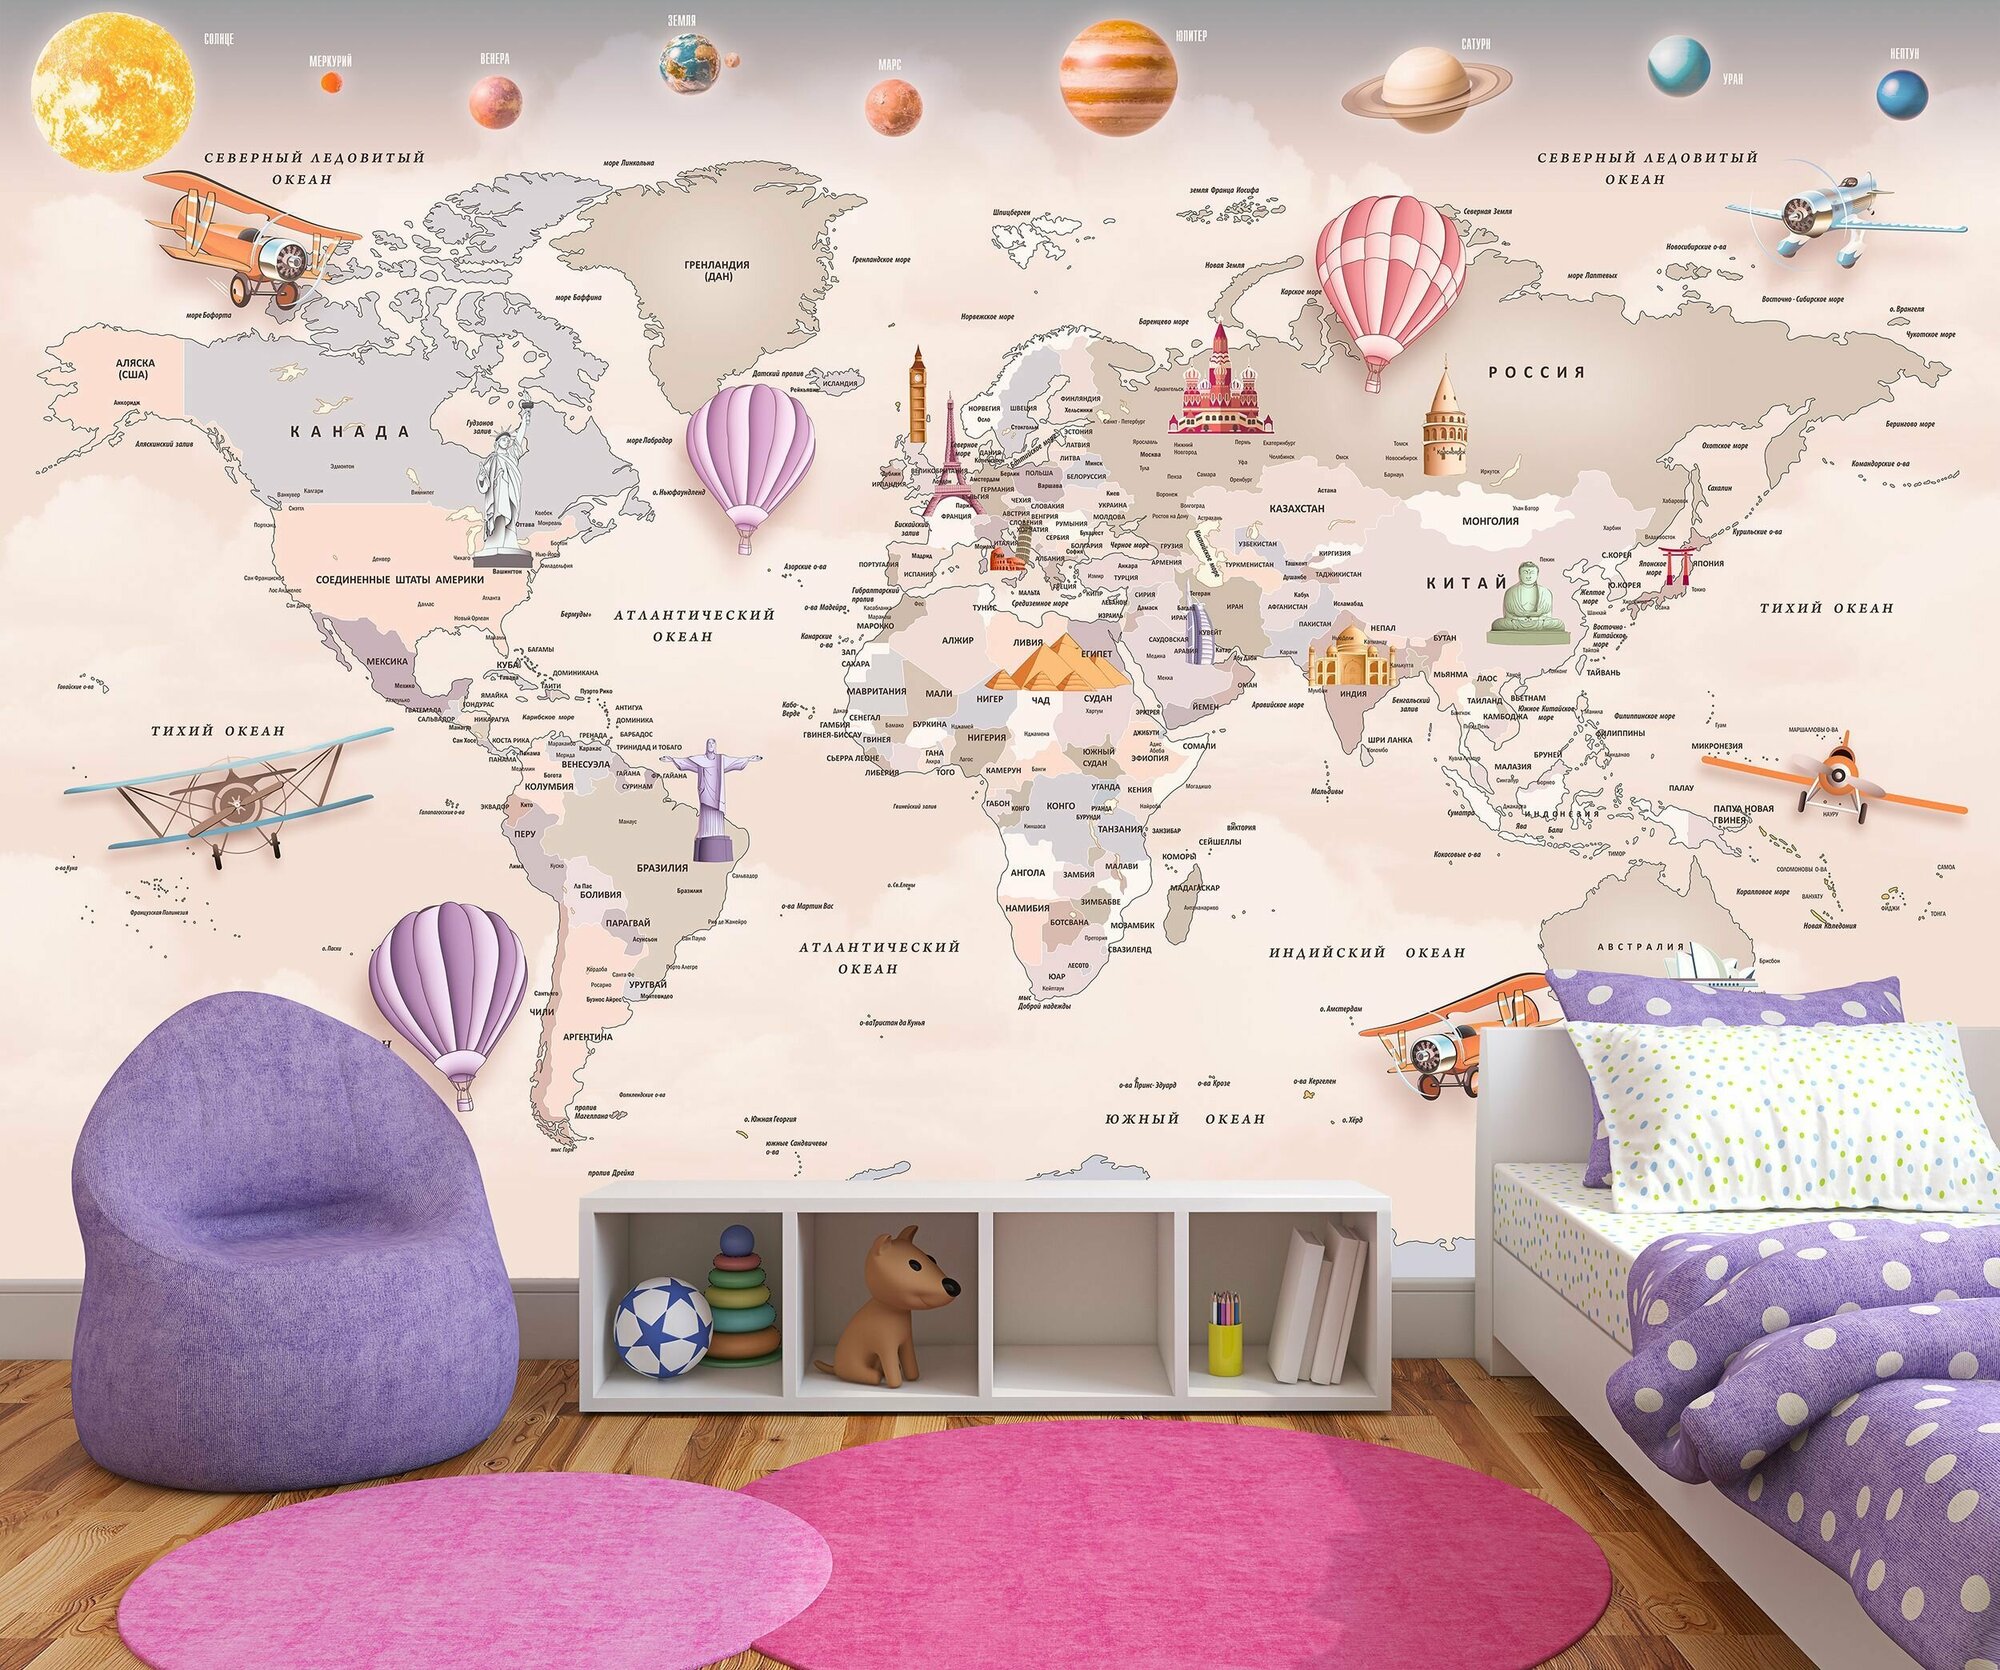 Фотообои флизелиновые 400х270см. на стену. Серия MAPS ARTDELUXE. 3д детская карта мира и планеты. Обои дизайнерские, эксклюзивные для детской комнаты.